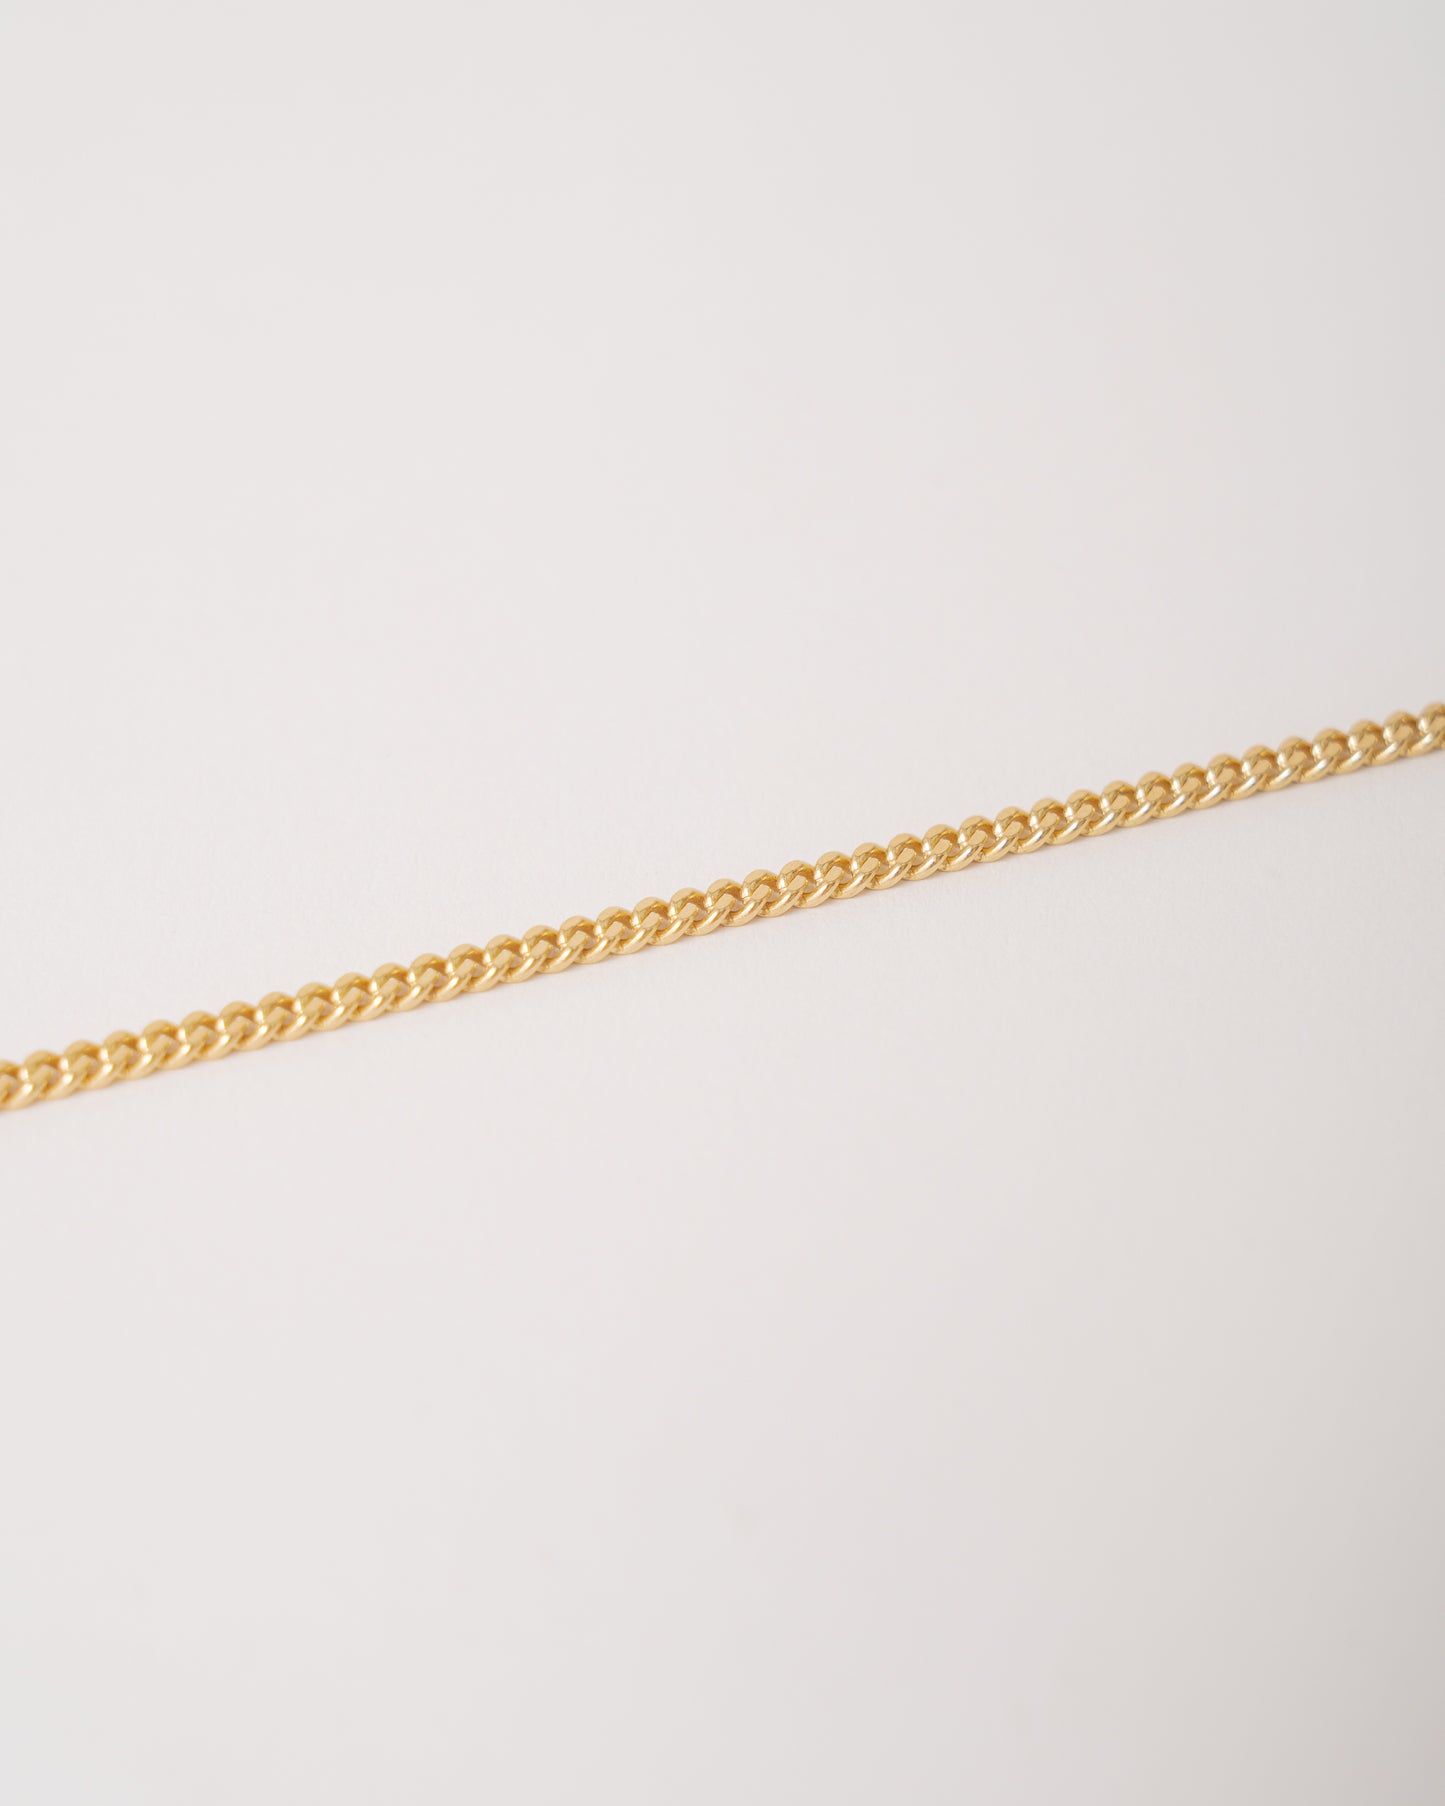 20" Cuban Necklace - 14K Gold